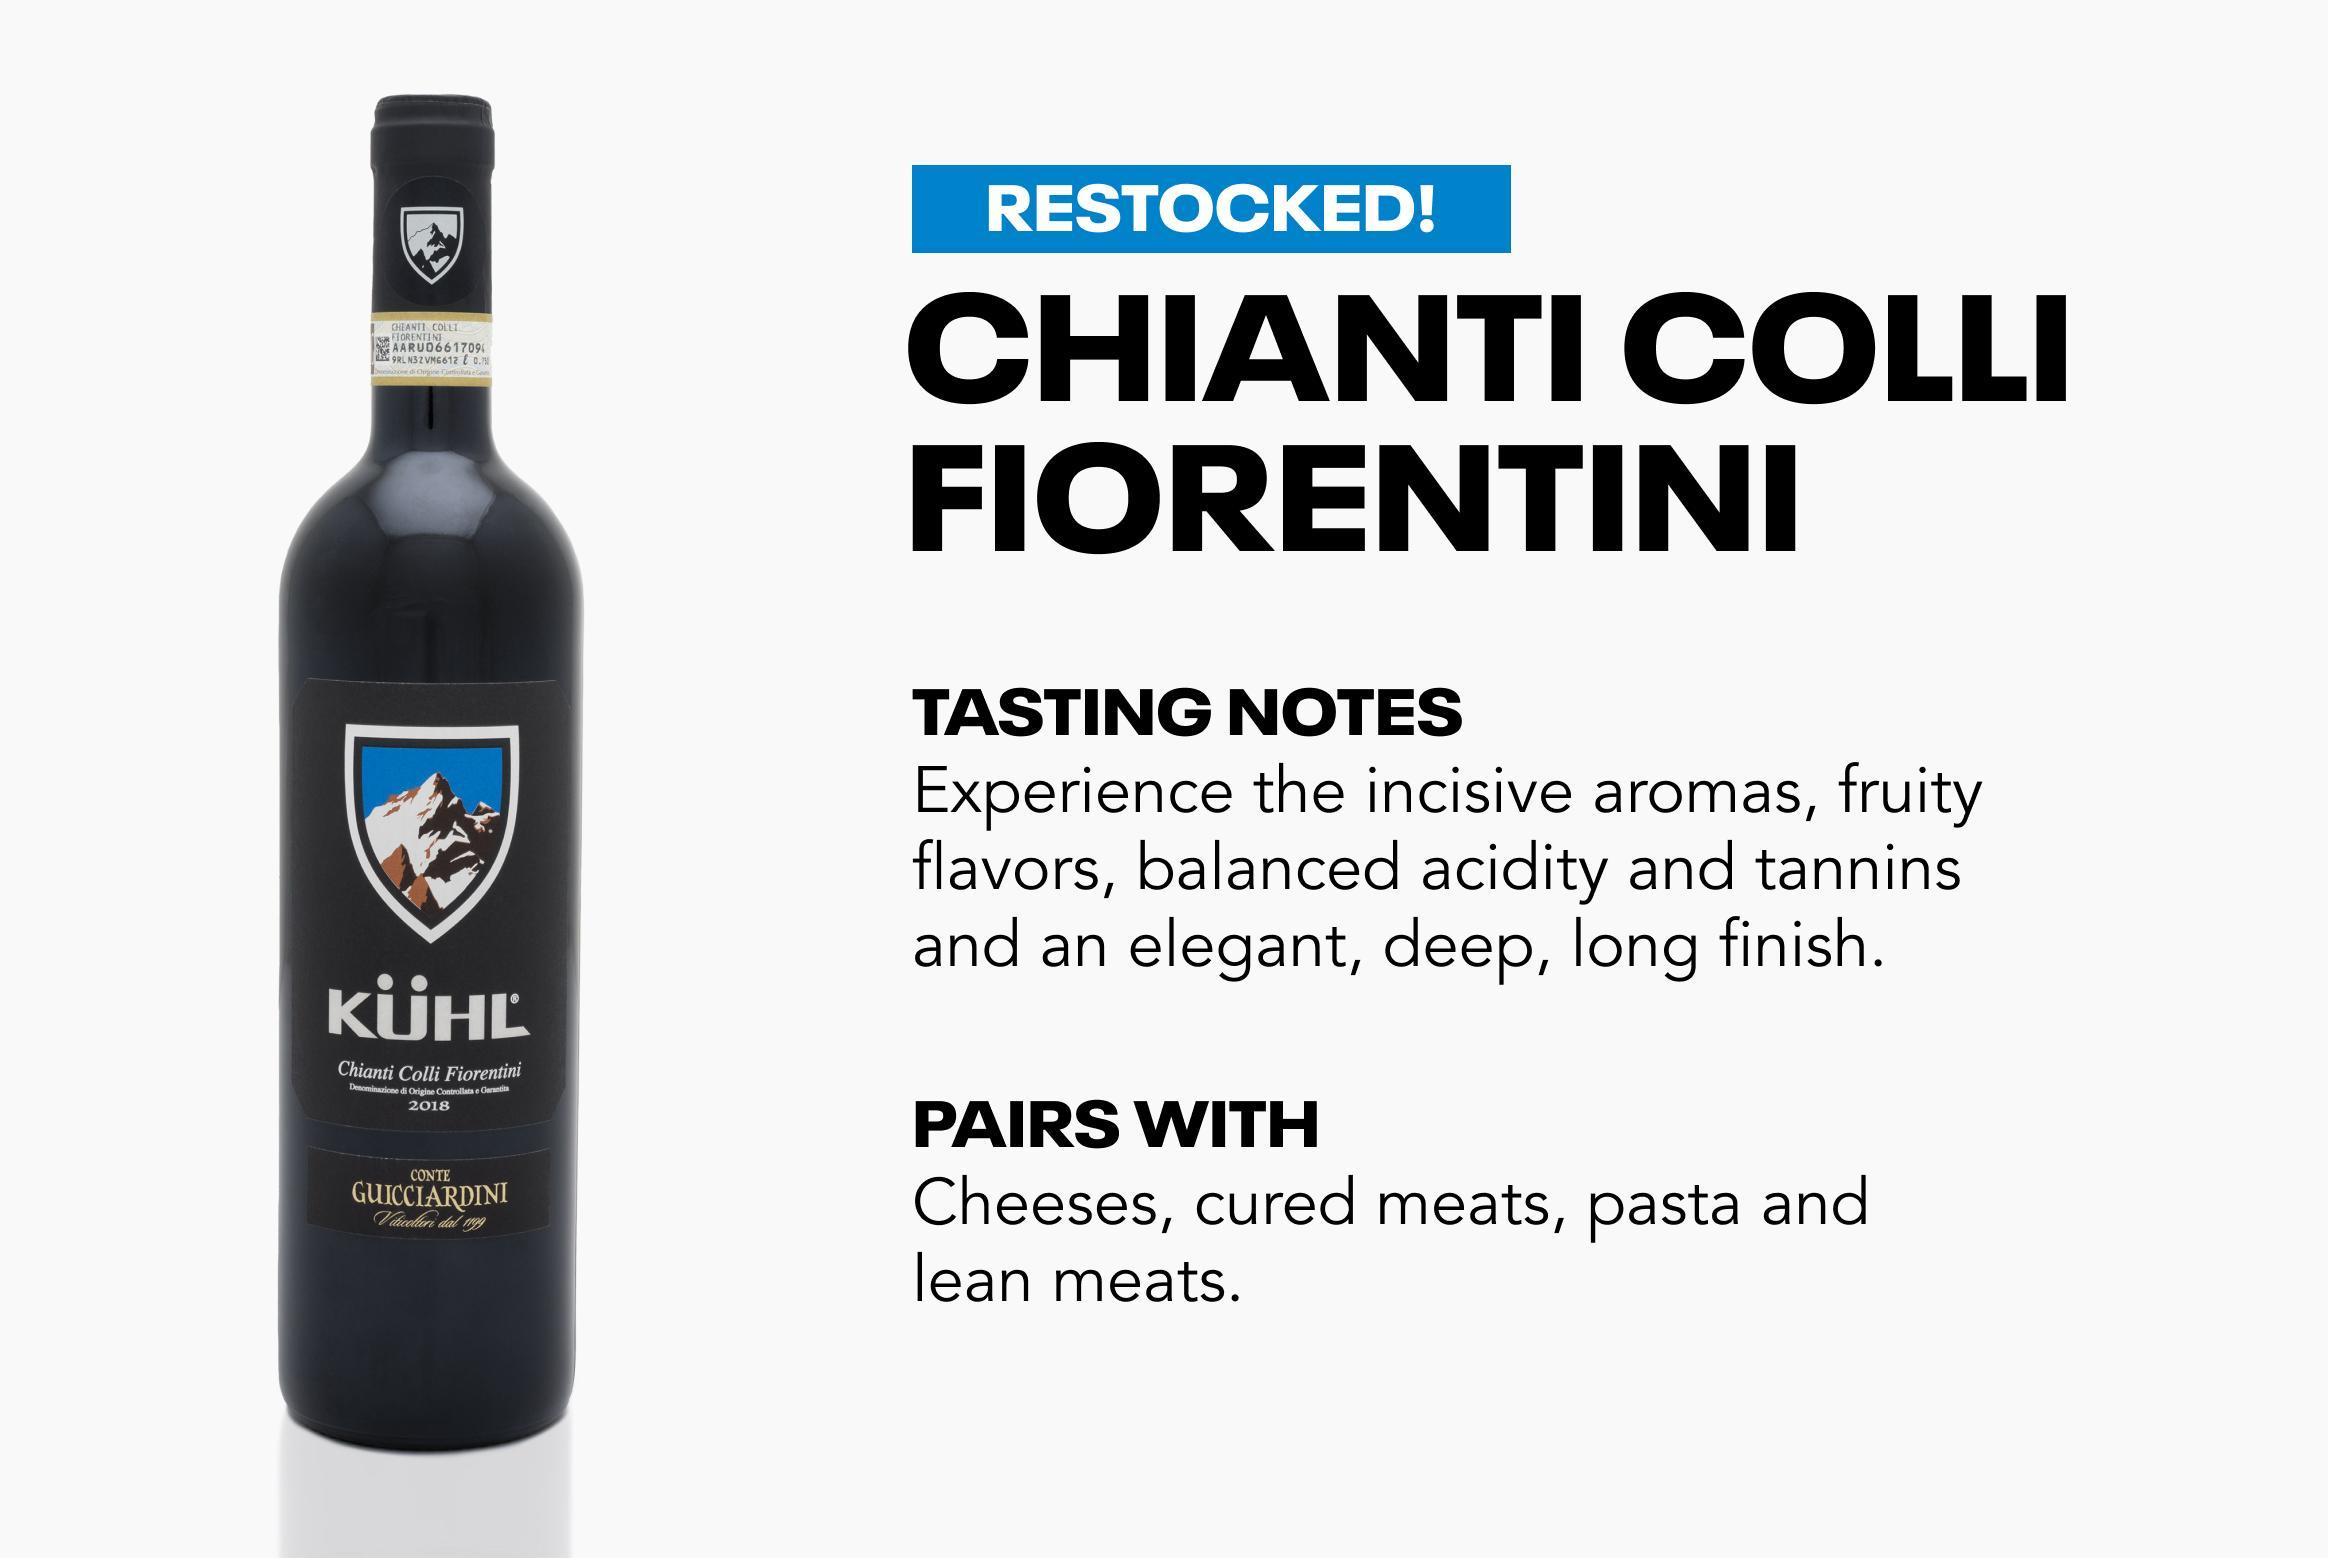 Chianti Colli Fiorentini Wine and info